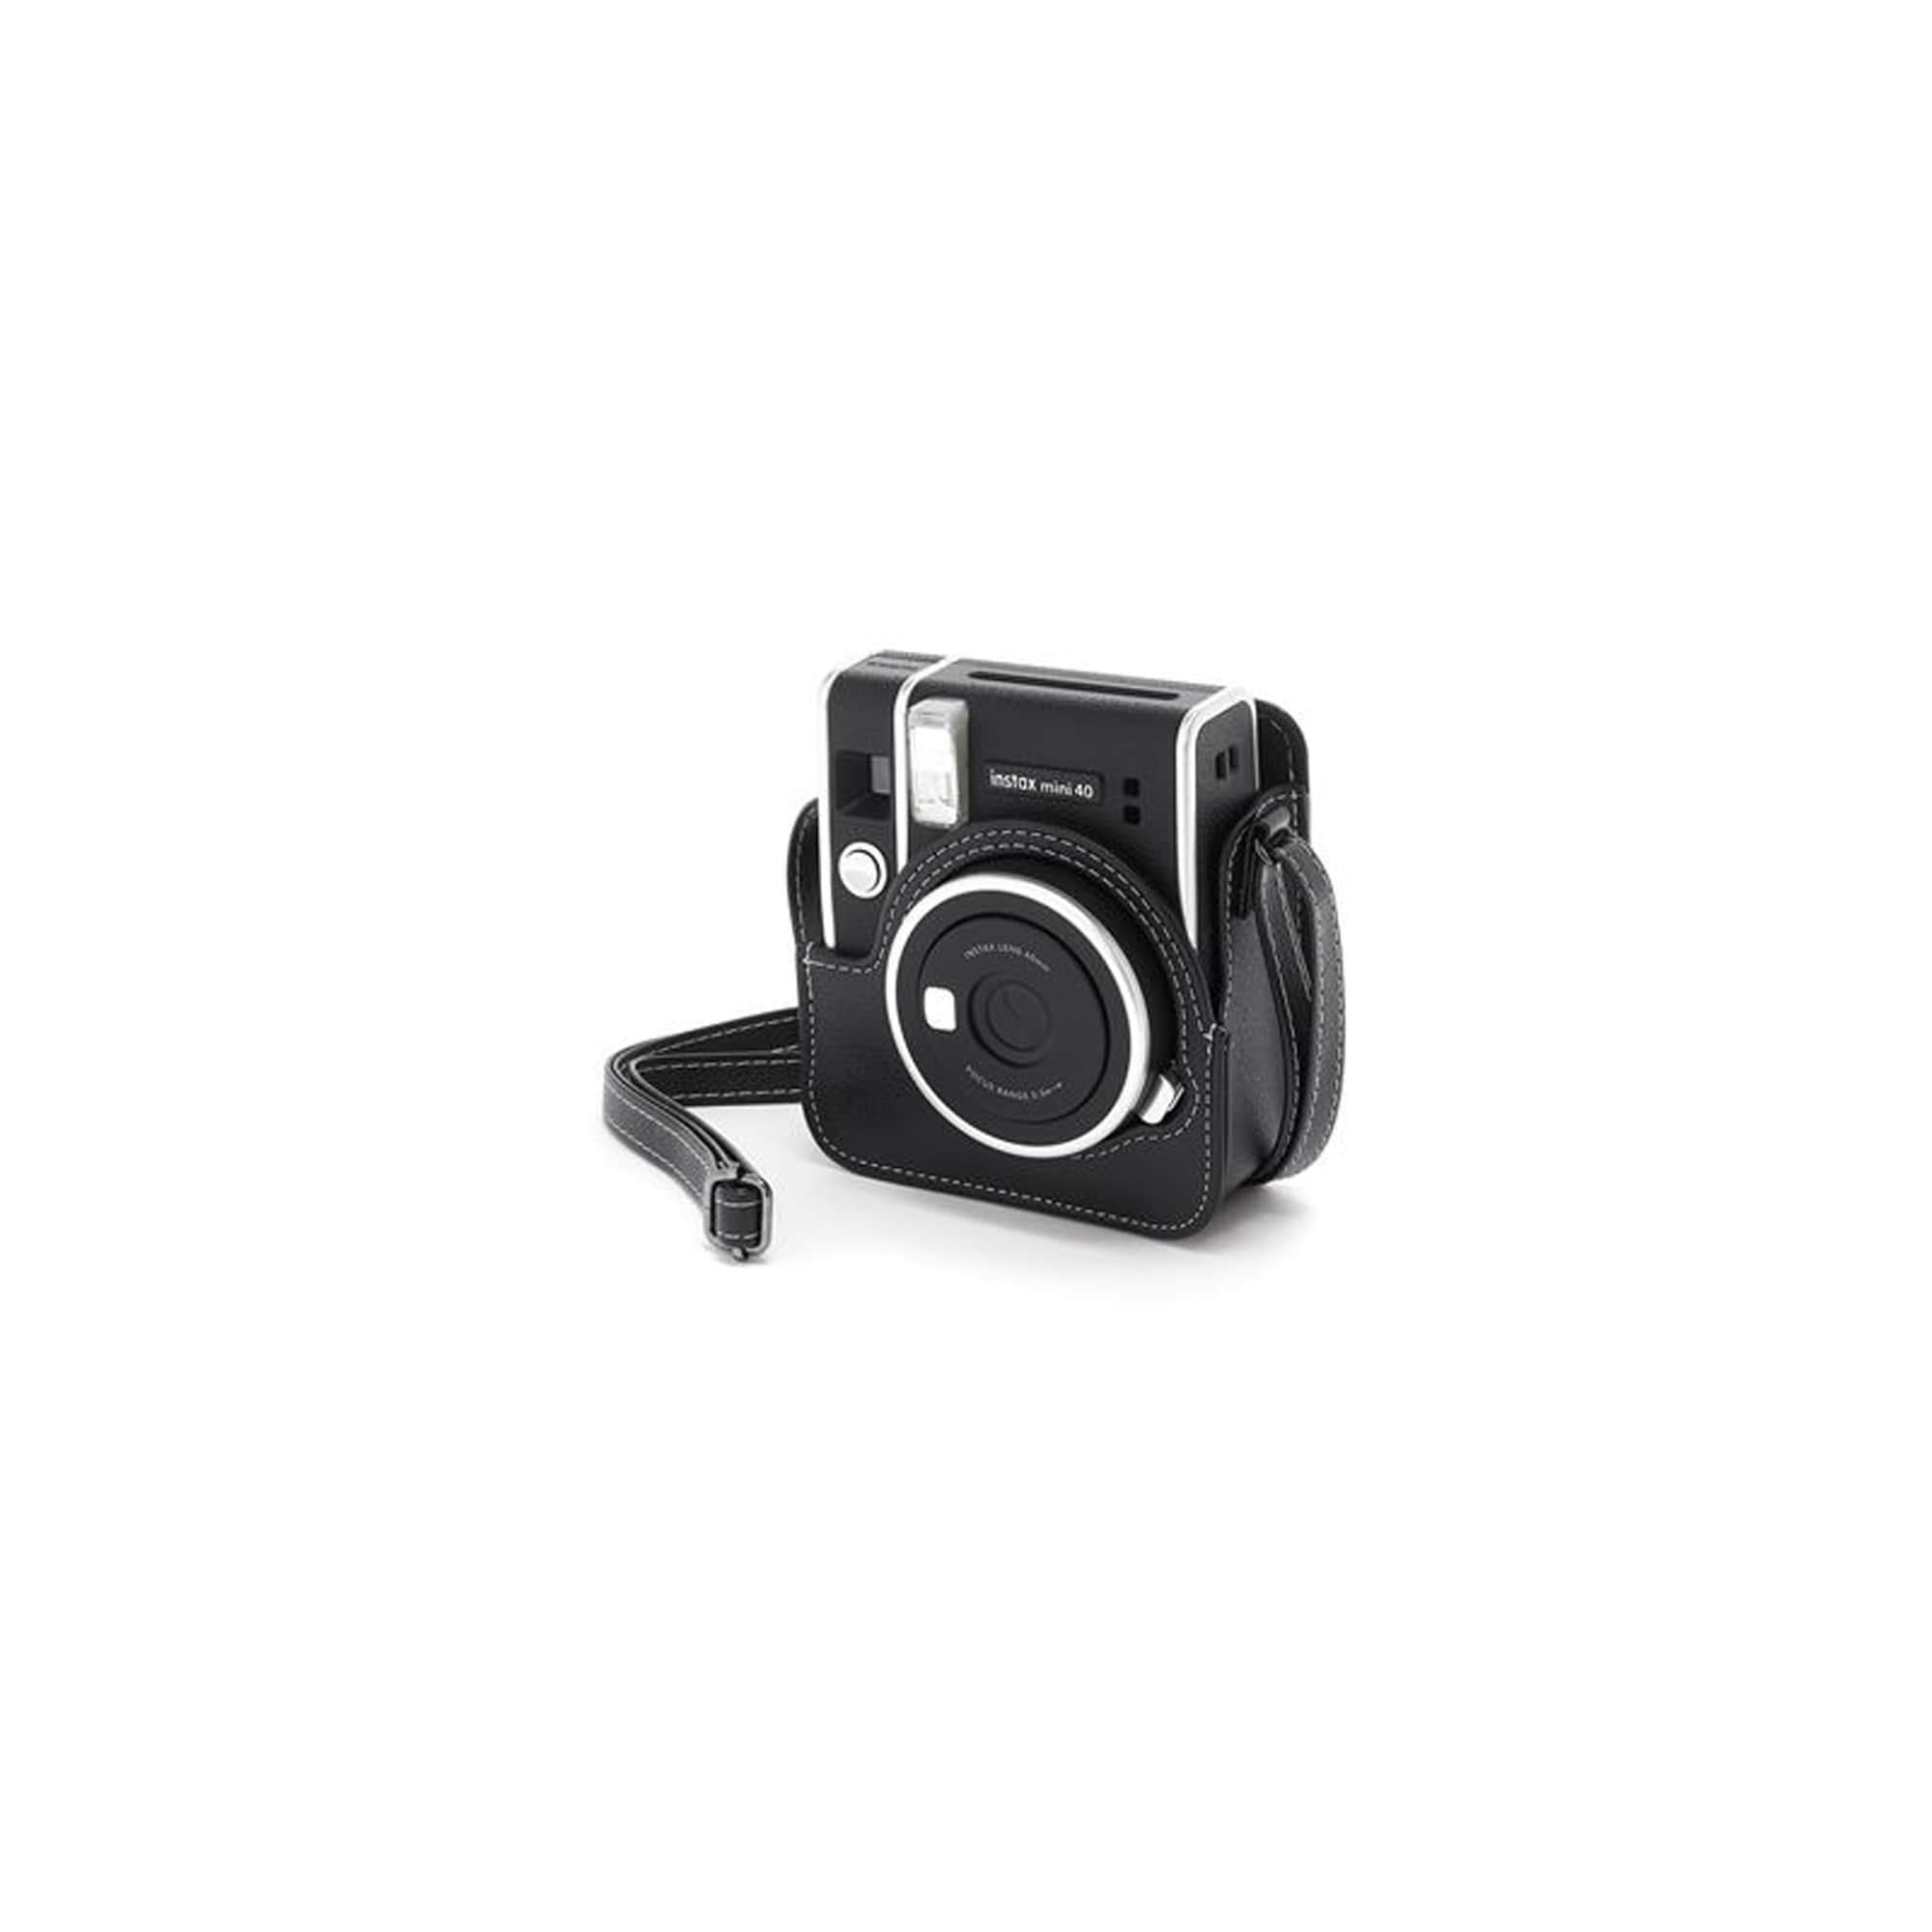 Kameraväska för Fujifilm instax mini 40